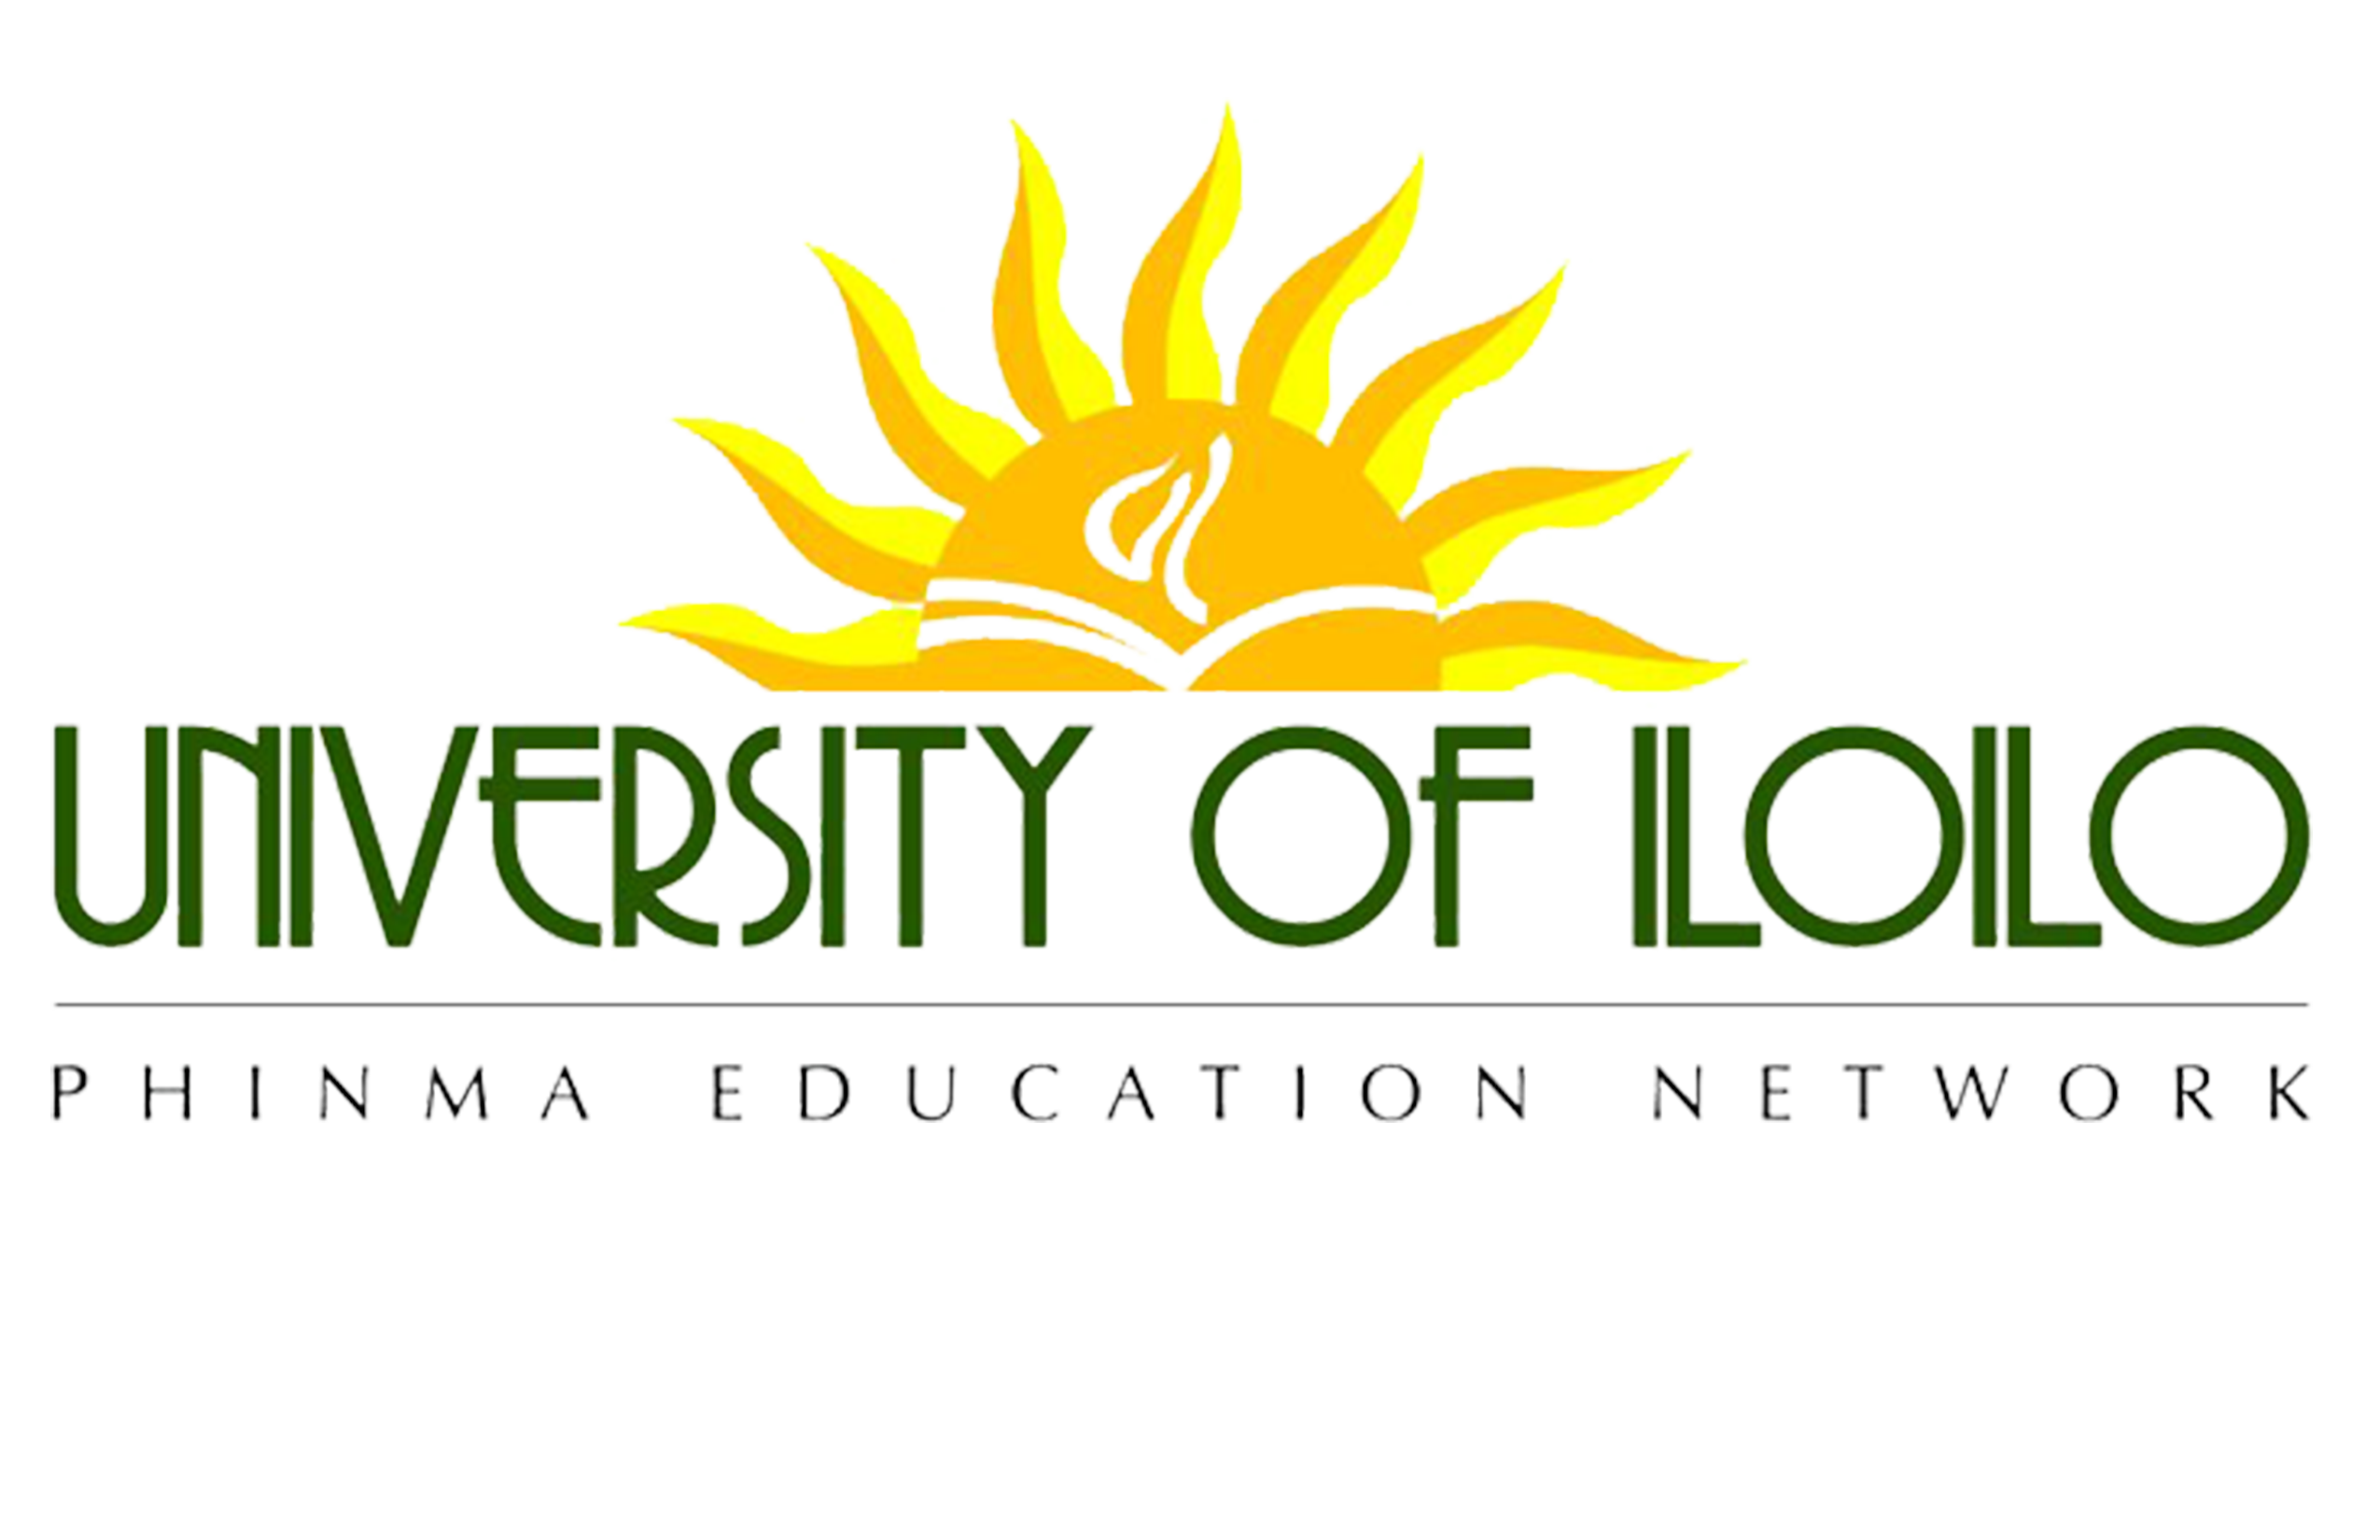 PHINMA University of Iloilo Logo